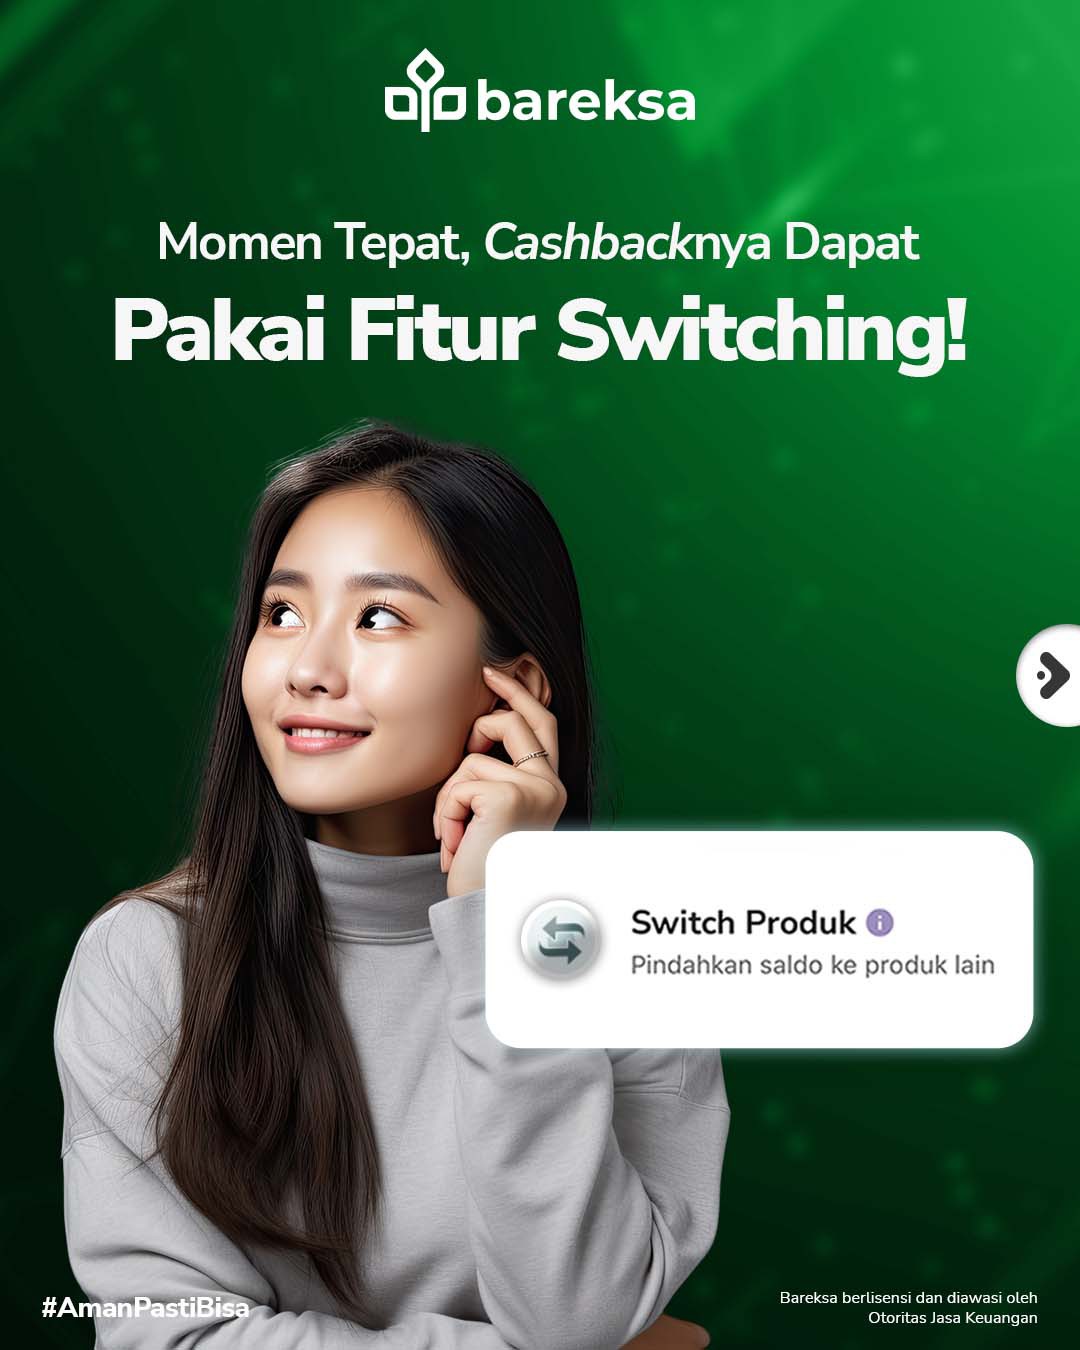 Alihkan Reksadana dengan Fitur Switching untuk Ambil Momen Pasar, Promo Cashback Fee 100%